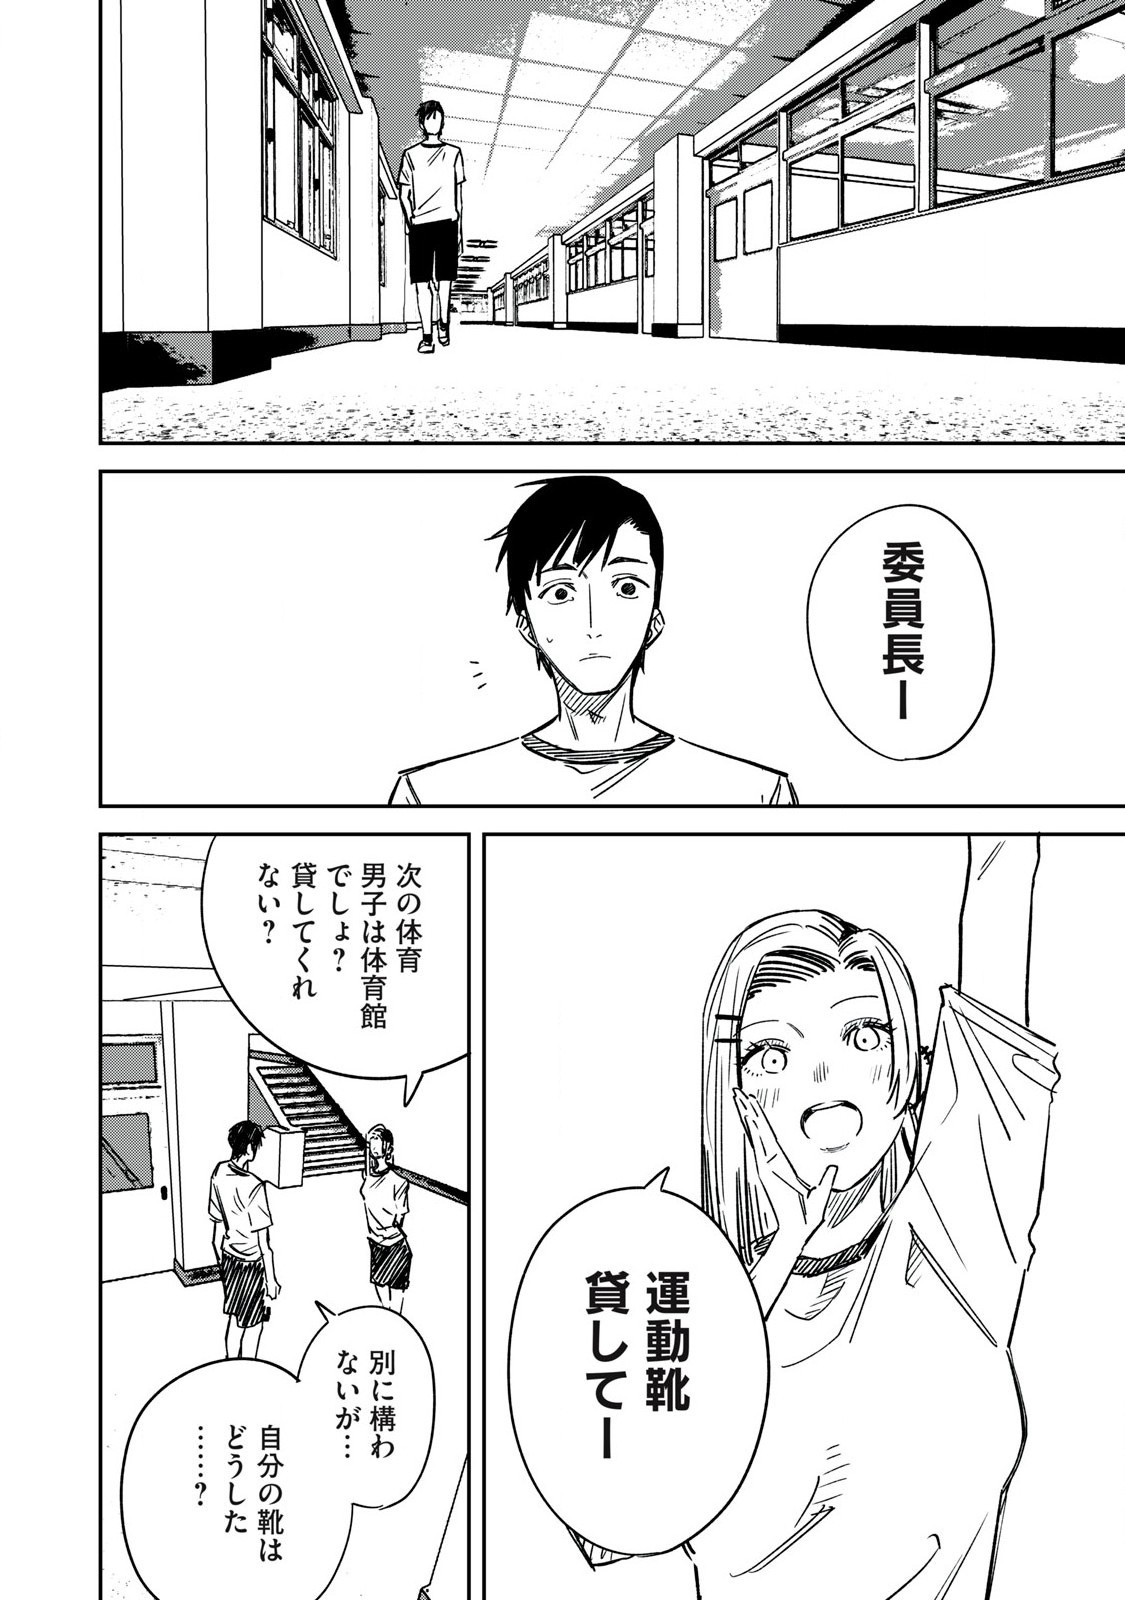 Uchuujin no Kakushigoto - Chapter 17 - Page 2